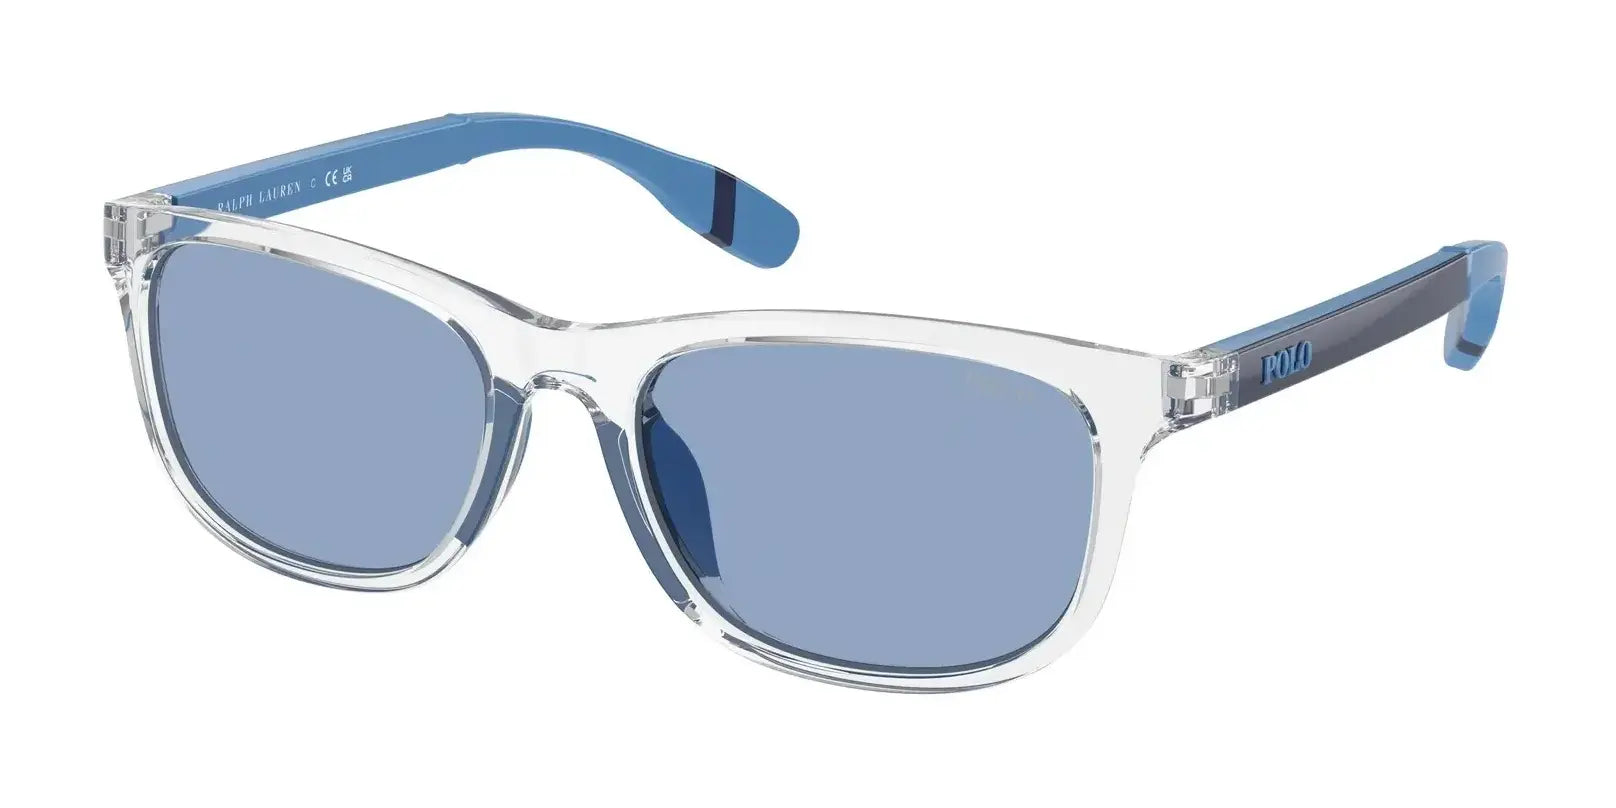 Polo PP9507U Sunglasses Shiny Crystal / Light Blue